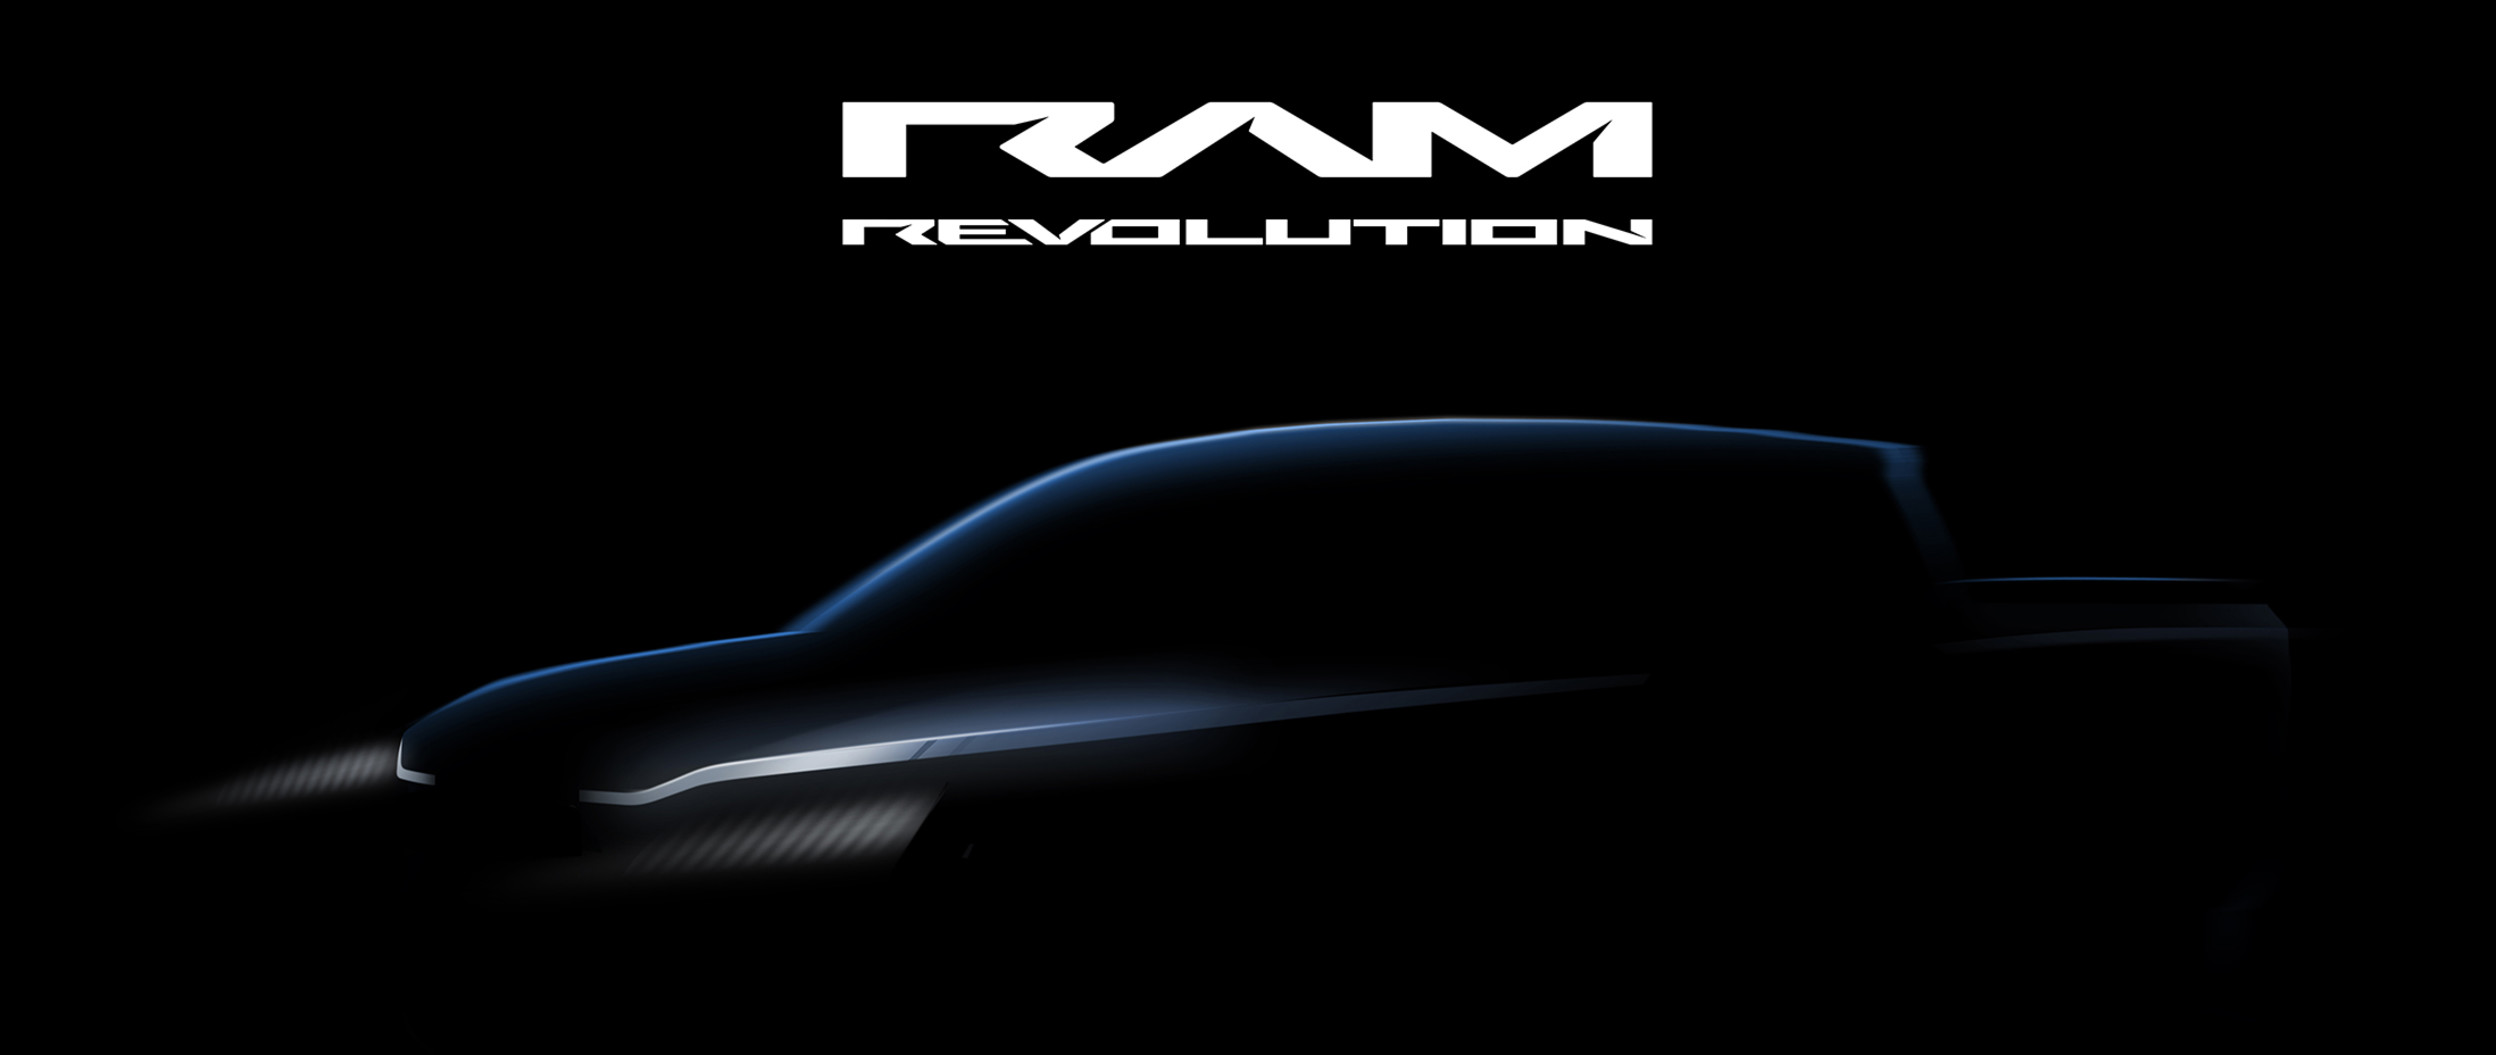 Image montrant un concept abstrait de camion électrique avec le logo Ram Revolution en texte blanc.